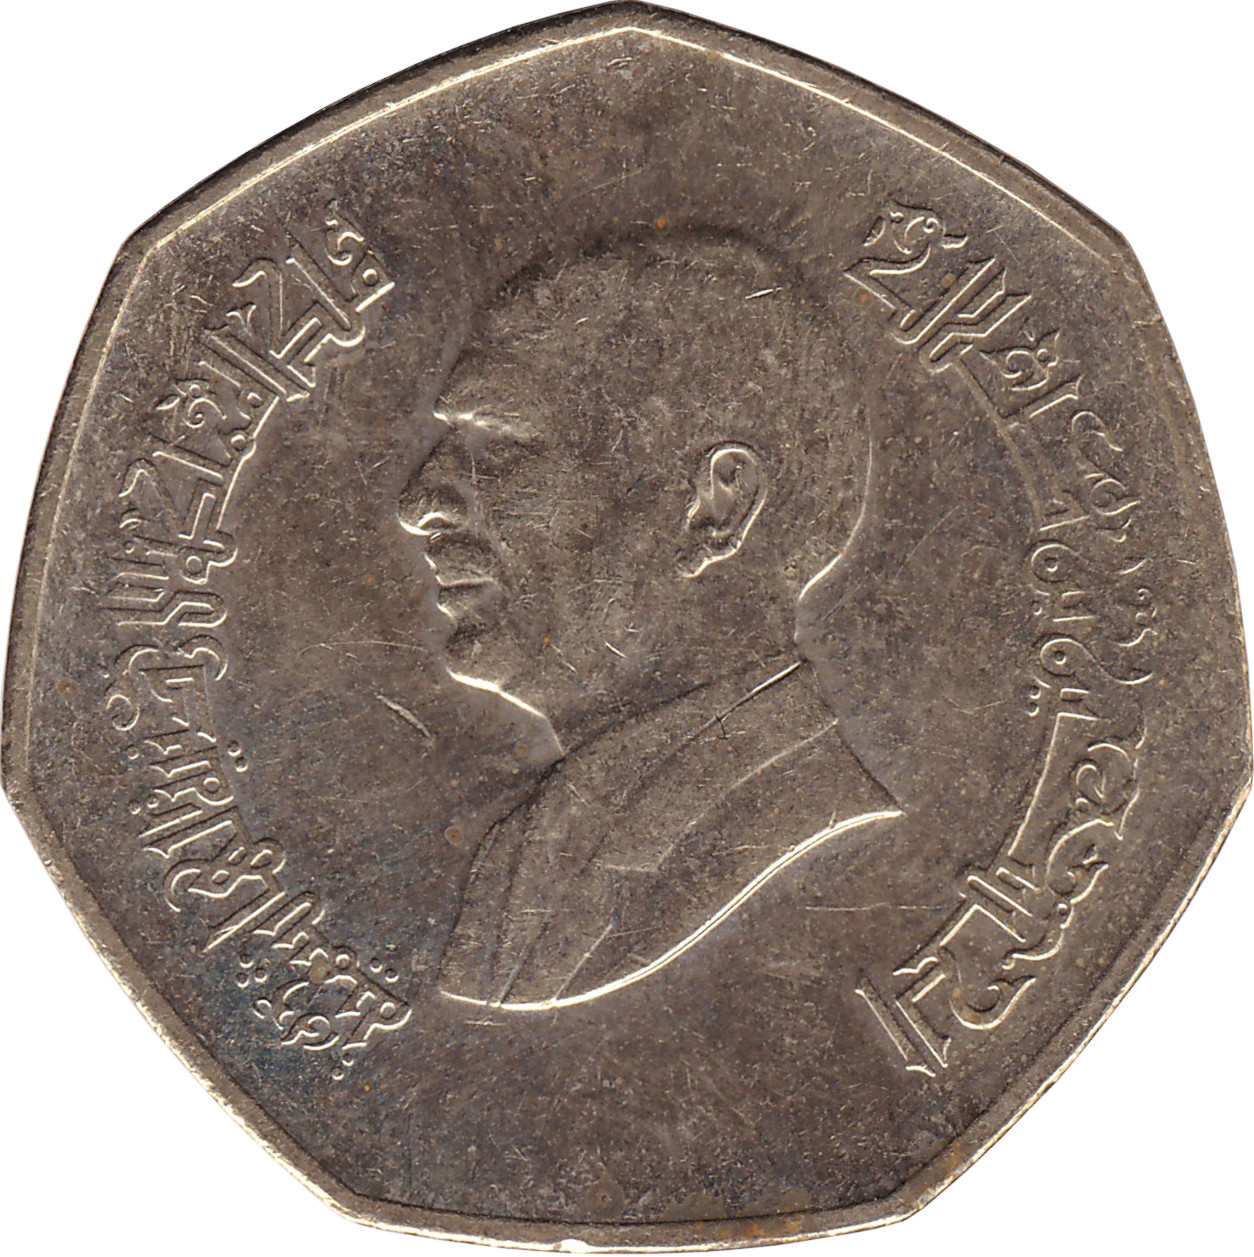 1/4 dinar - Hussein Ibn Talal - Old head